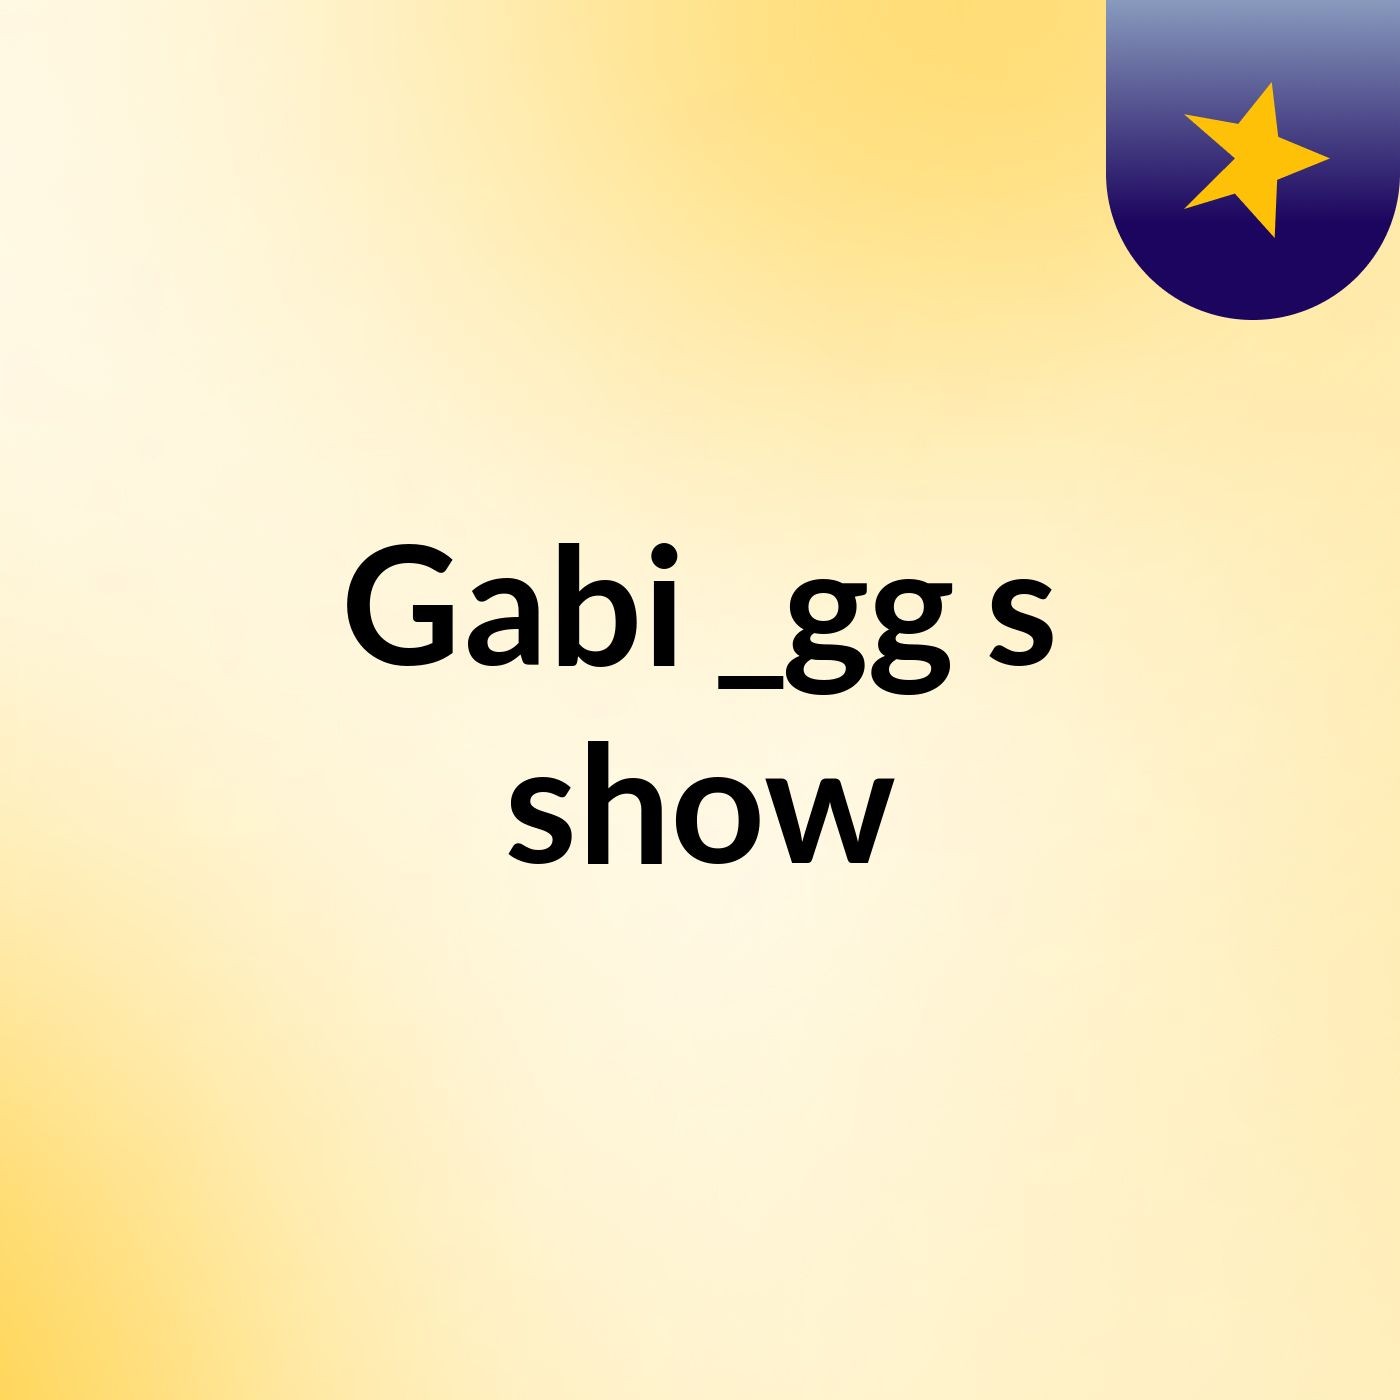 Gabi _gg's show